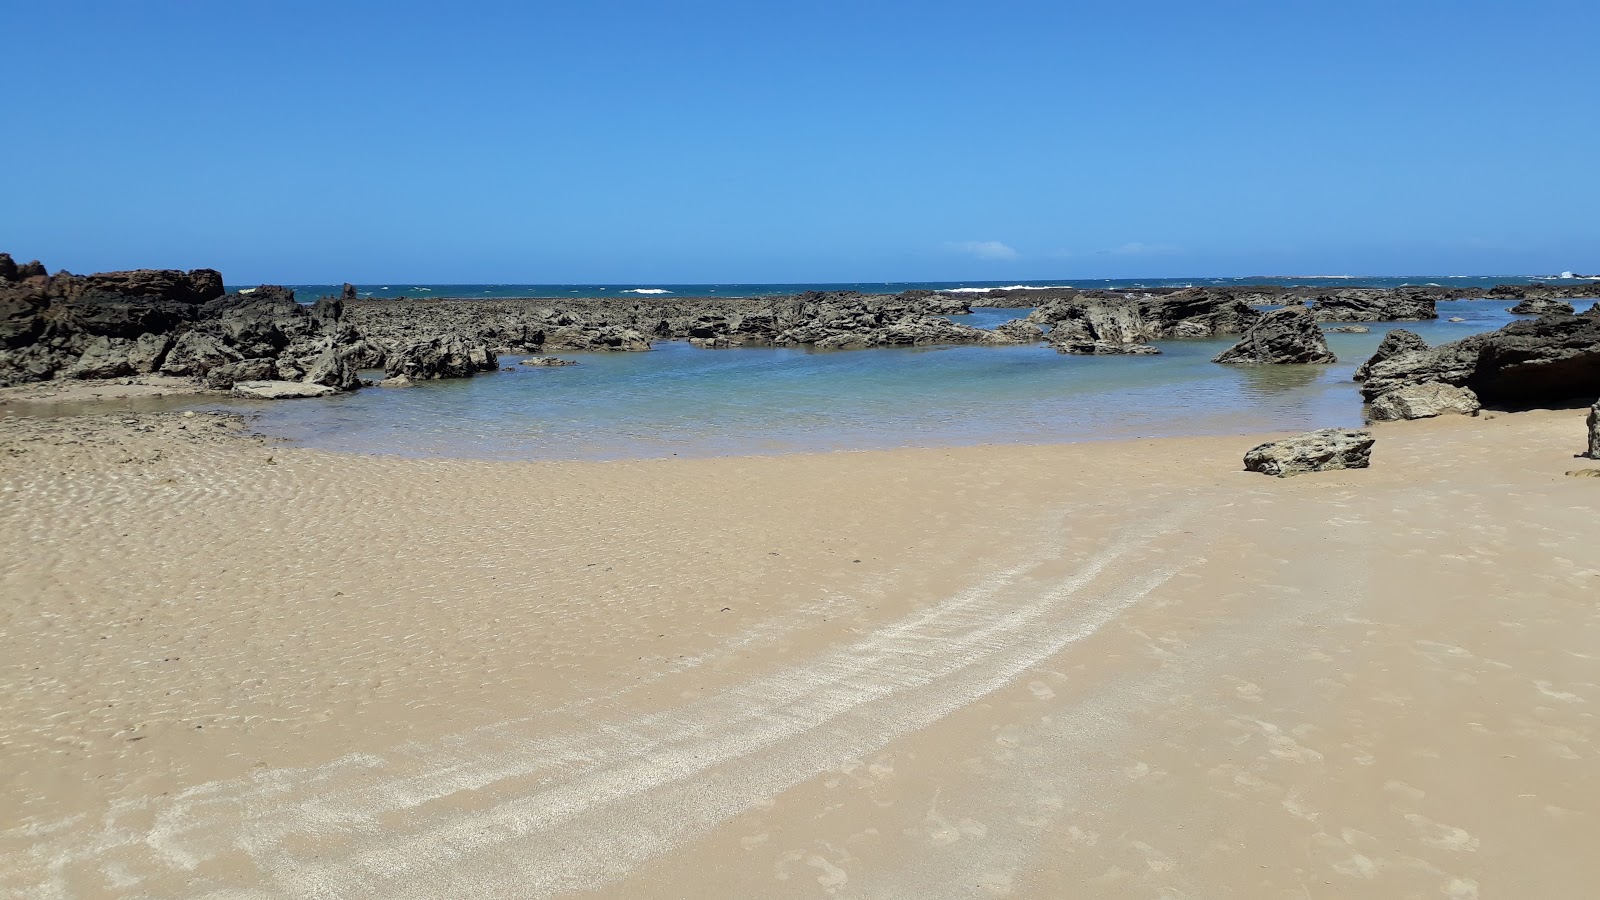 Praia do Mirante'in fotoğrafı doğrudan plaj ile birlikte